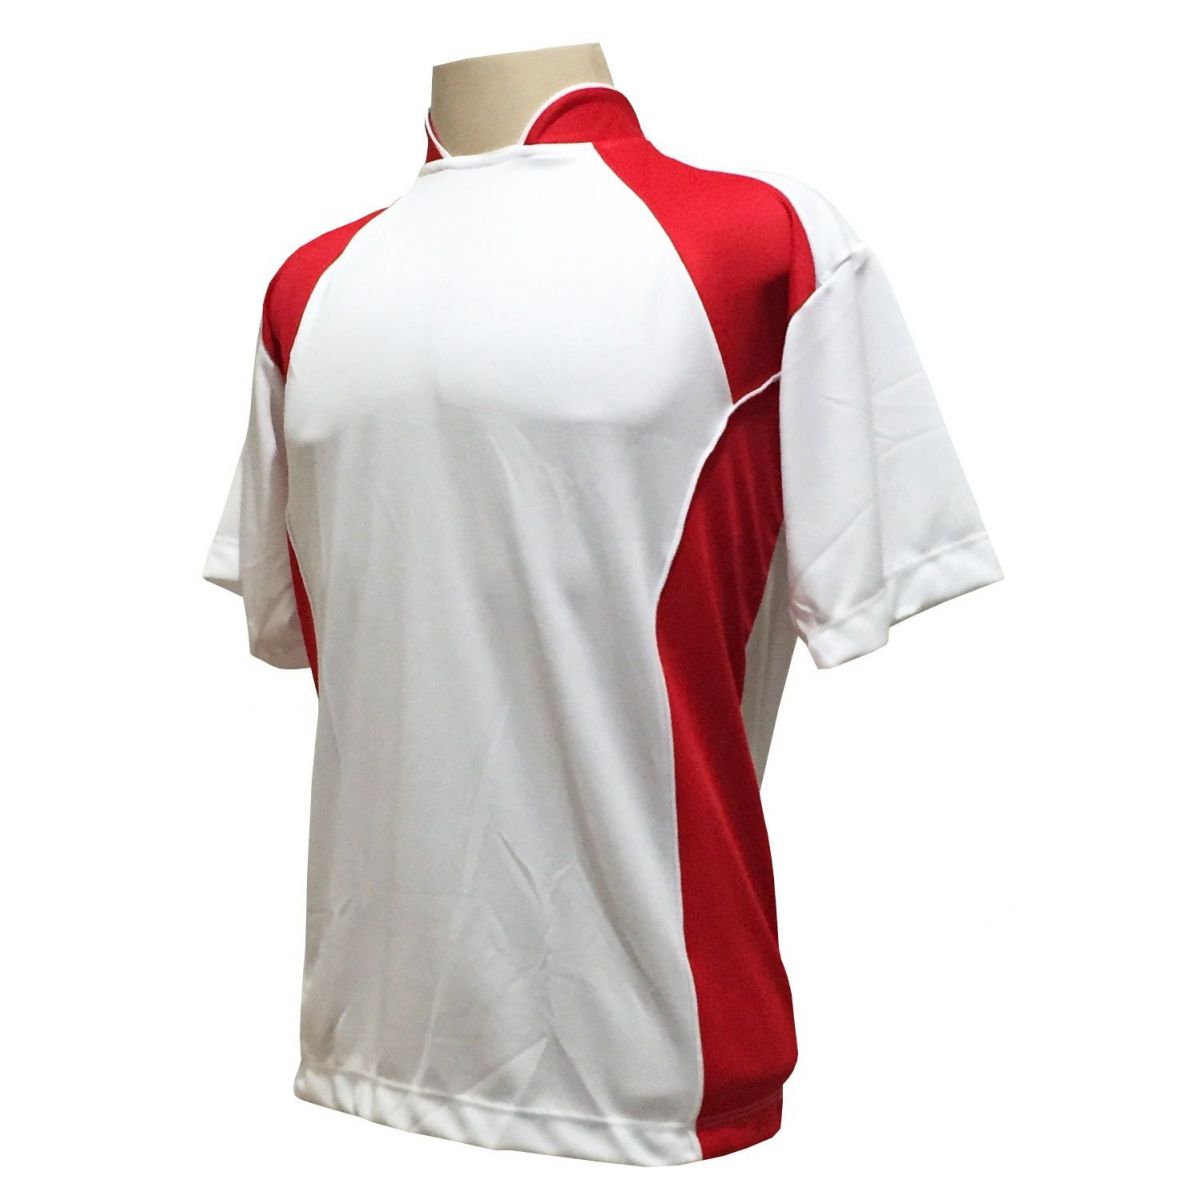 Uniforme Esportivo com 14 camisas modelo Suécia Branco/Vermelho + 14 calções modelo Copa + 1 Goleiro + Brindes